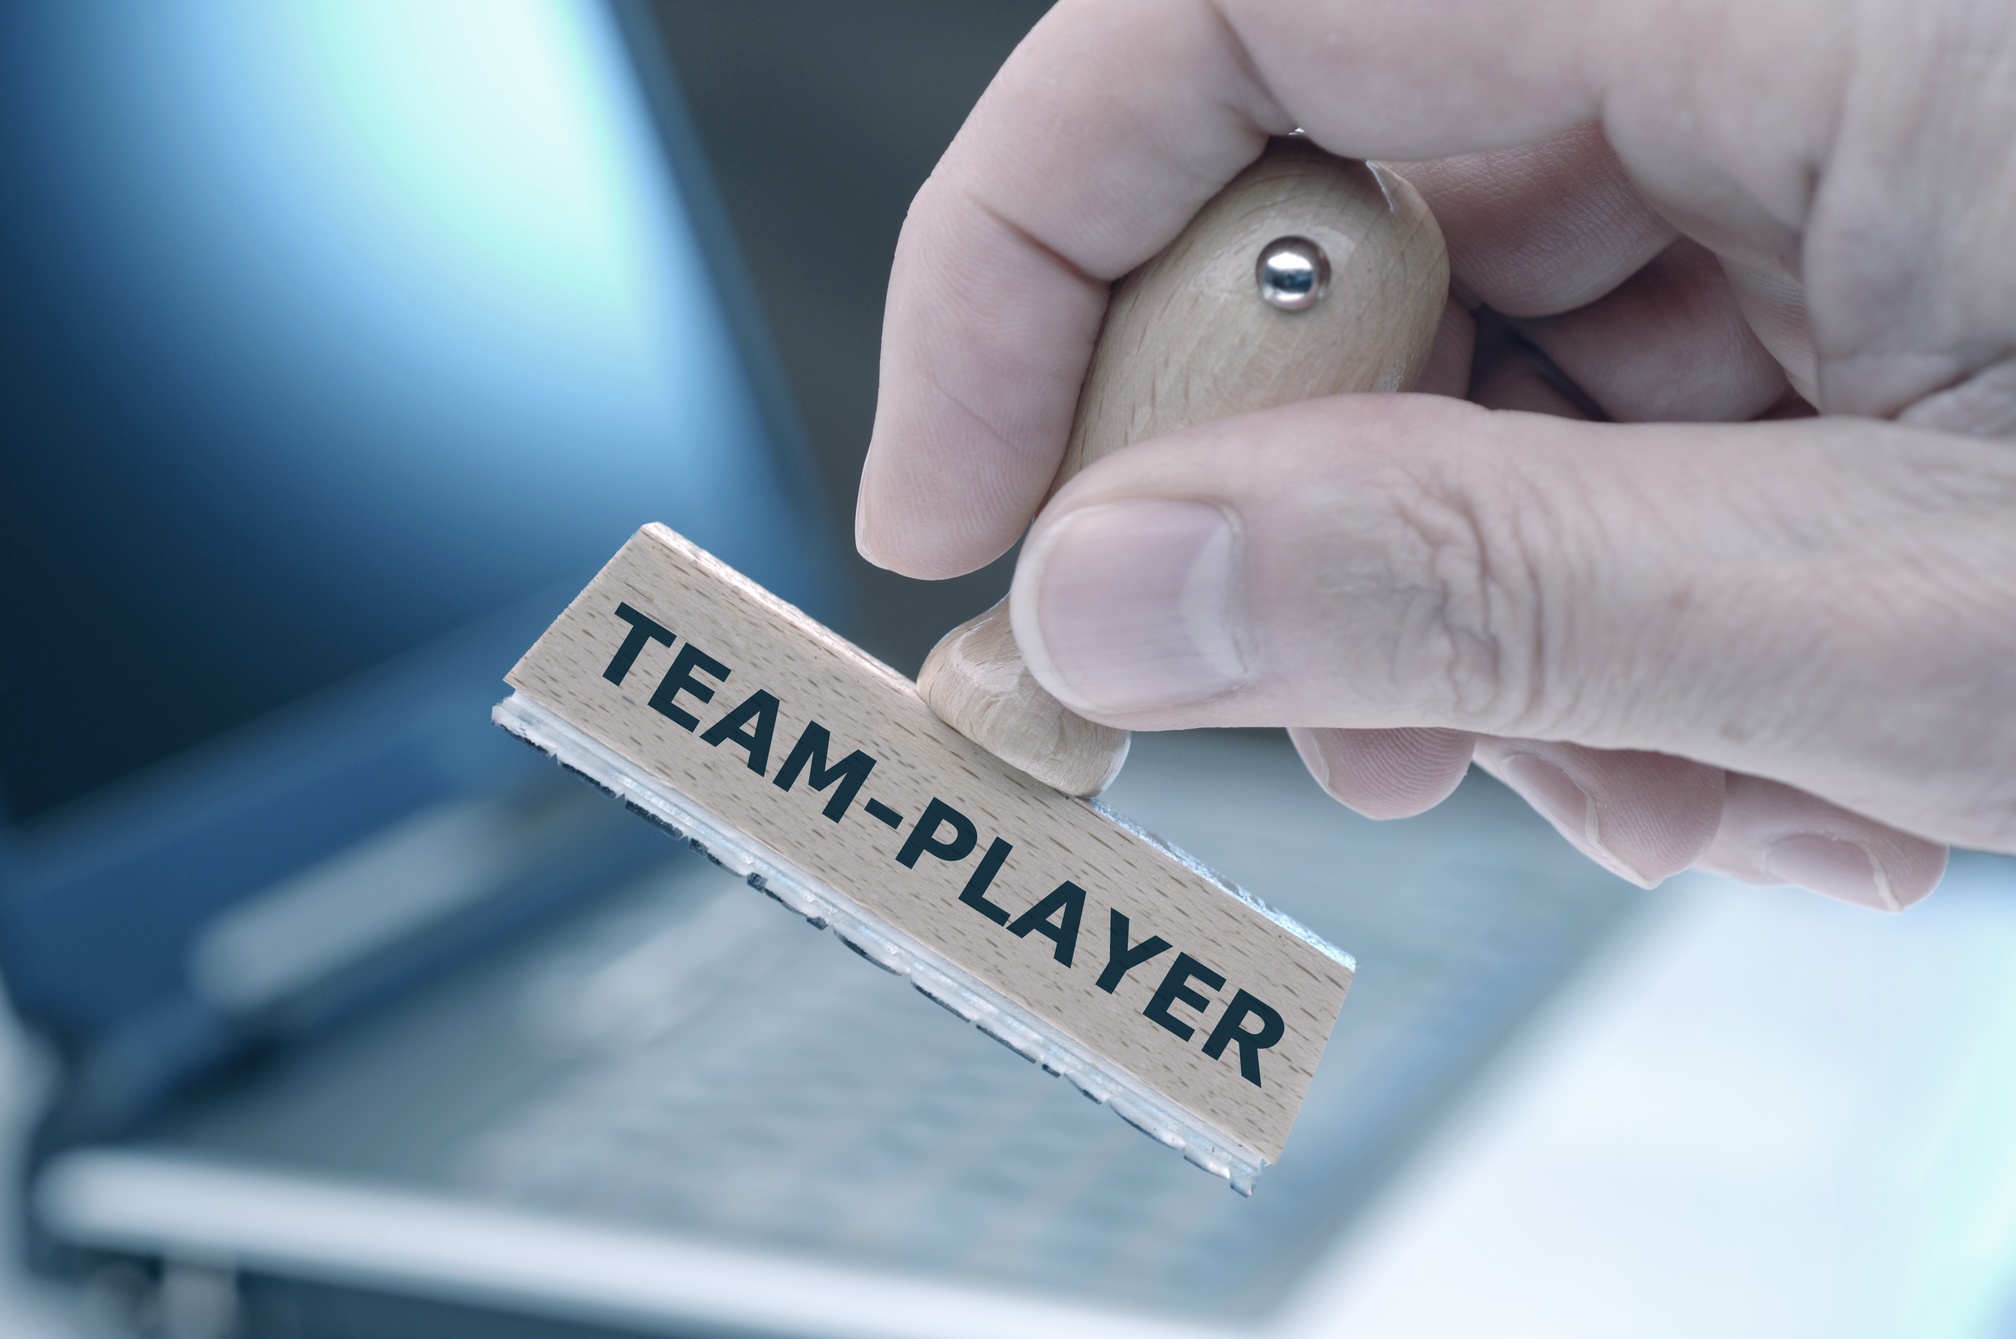 Das Foto zeigt einen Stempel mit der Aufschrift "Teamplayer"